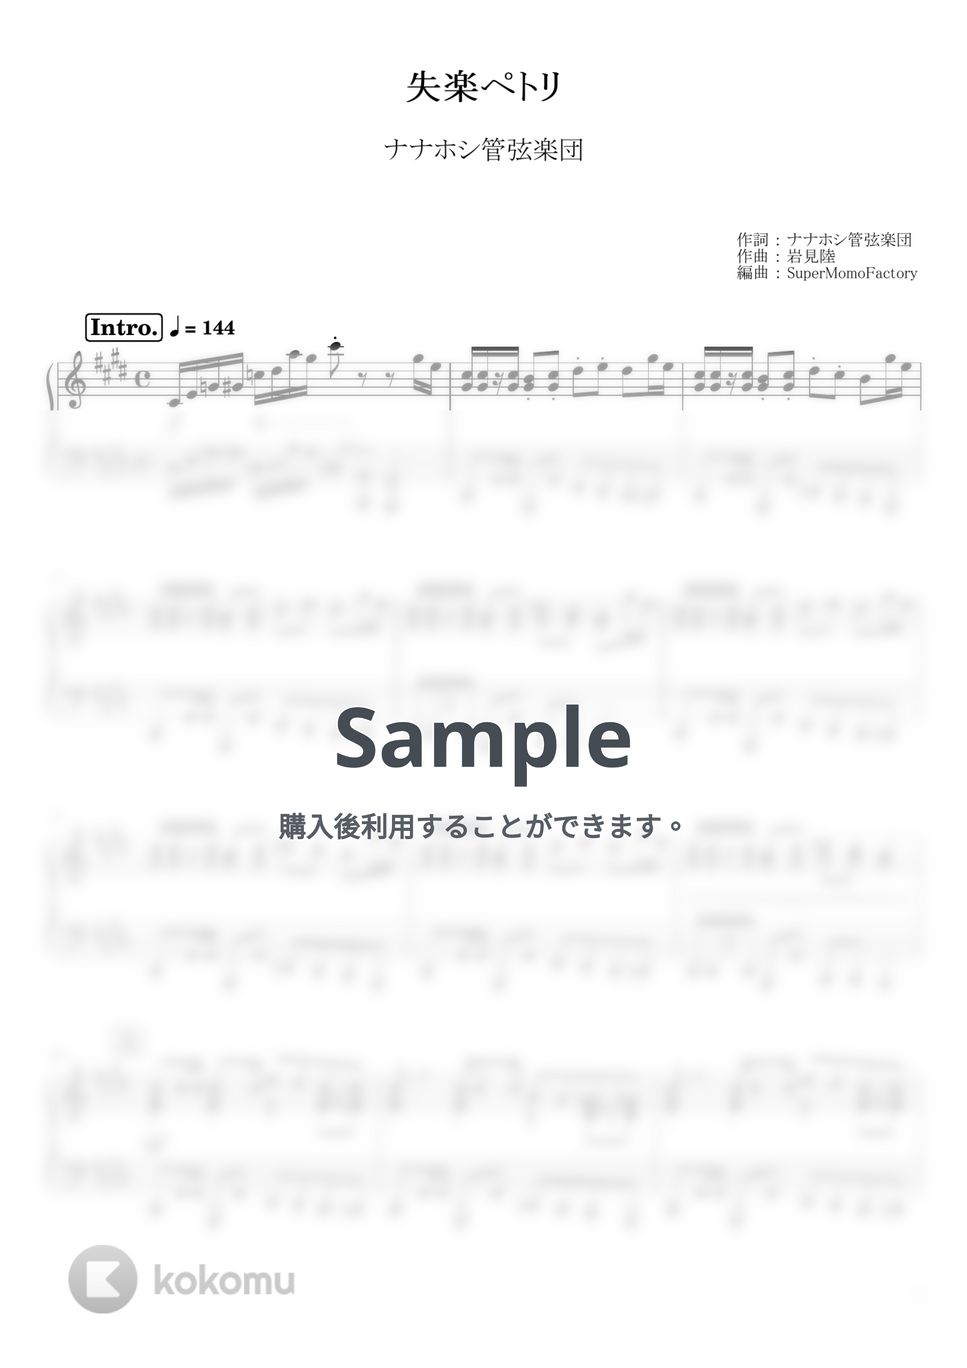 ナナホシ管弦楽団 - 失楽ペトリ (ピアノソロ / 上級) by SuperMomoFactory